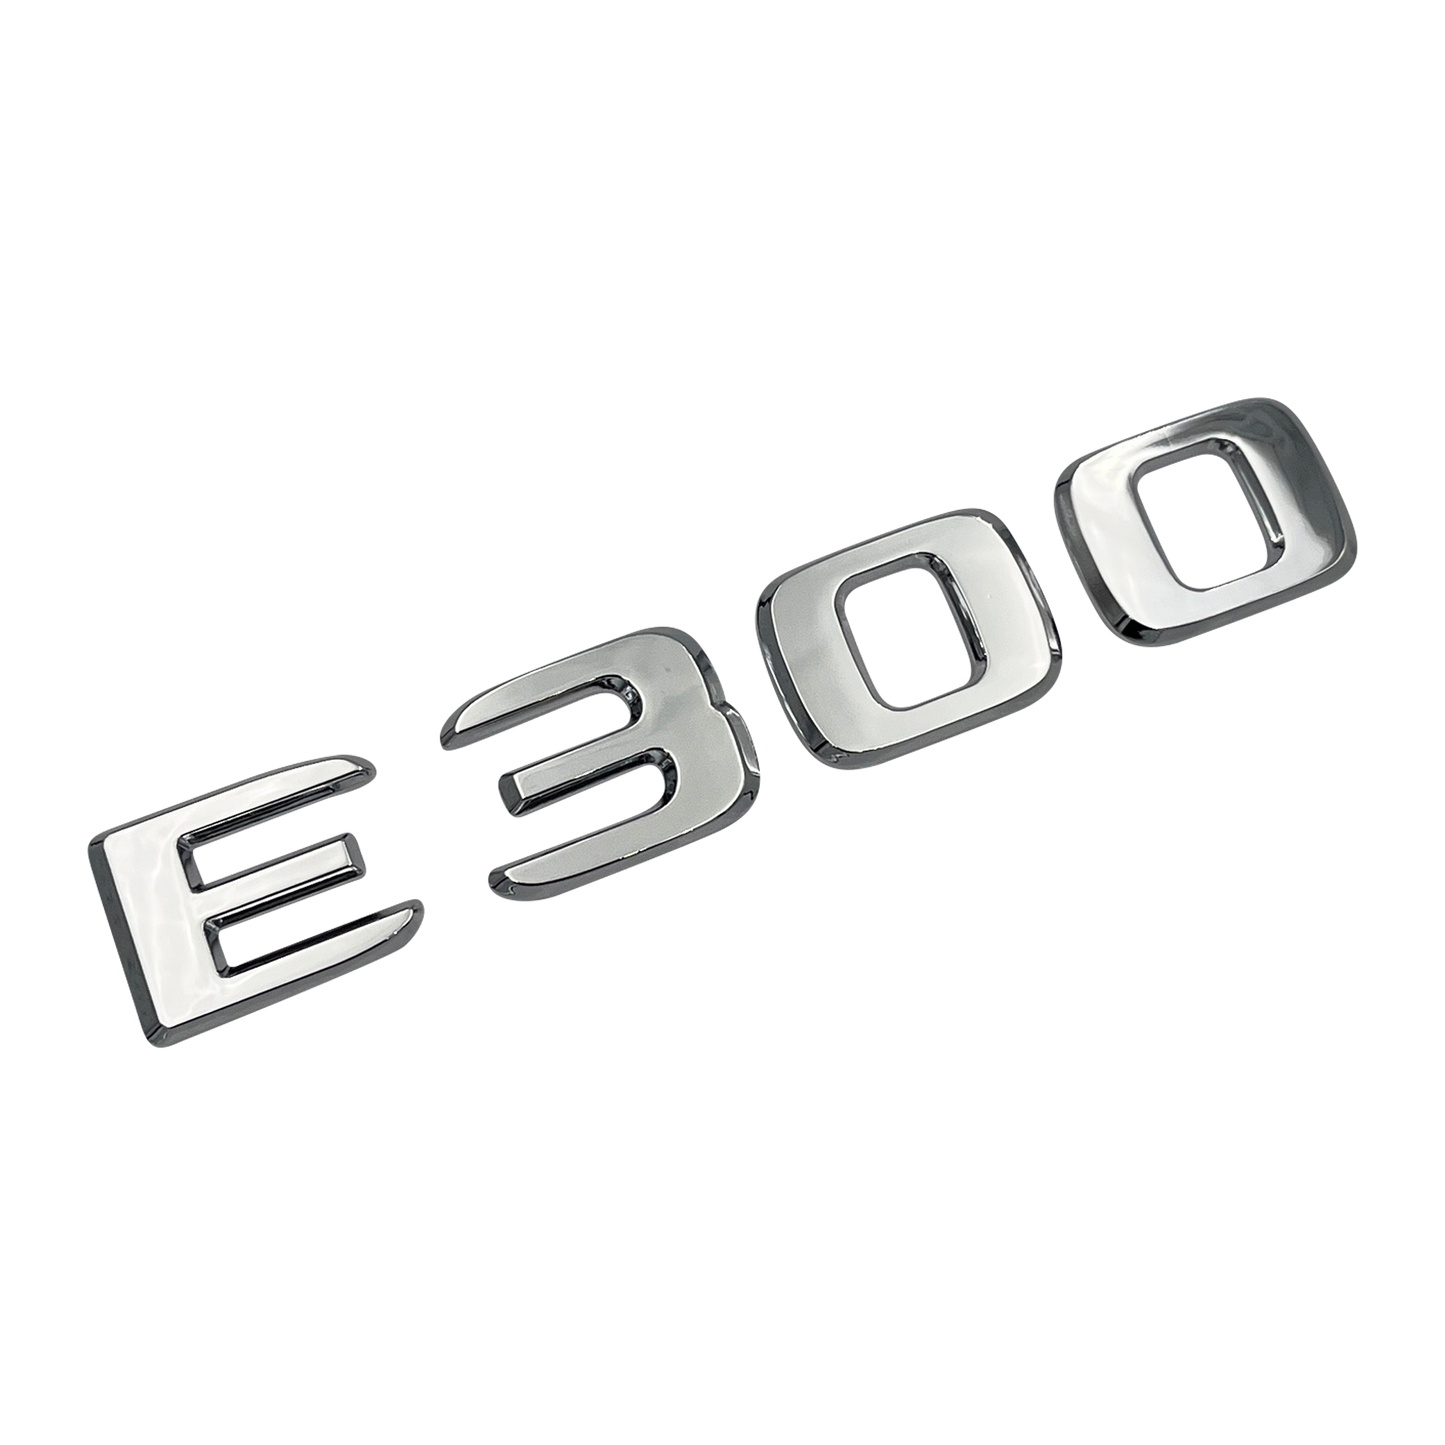 Chrome Mercedes E300 Emblem 